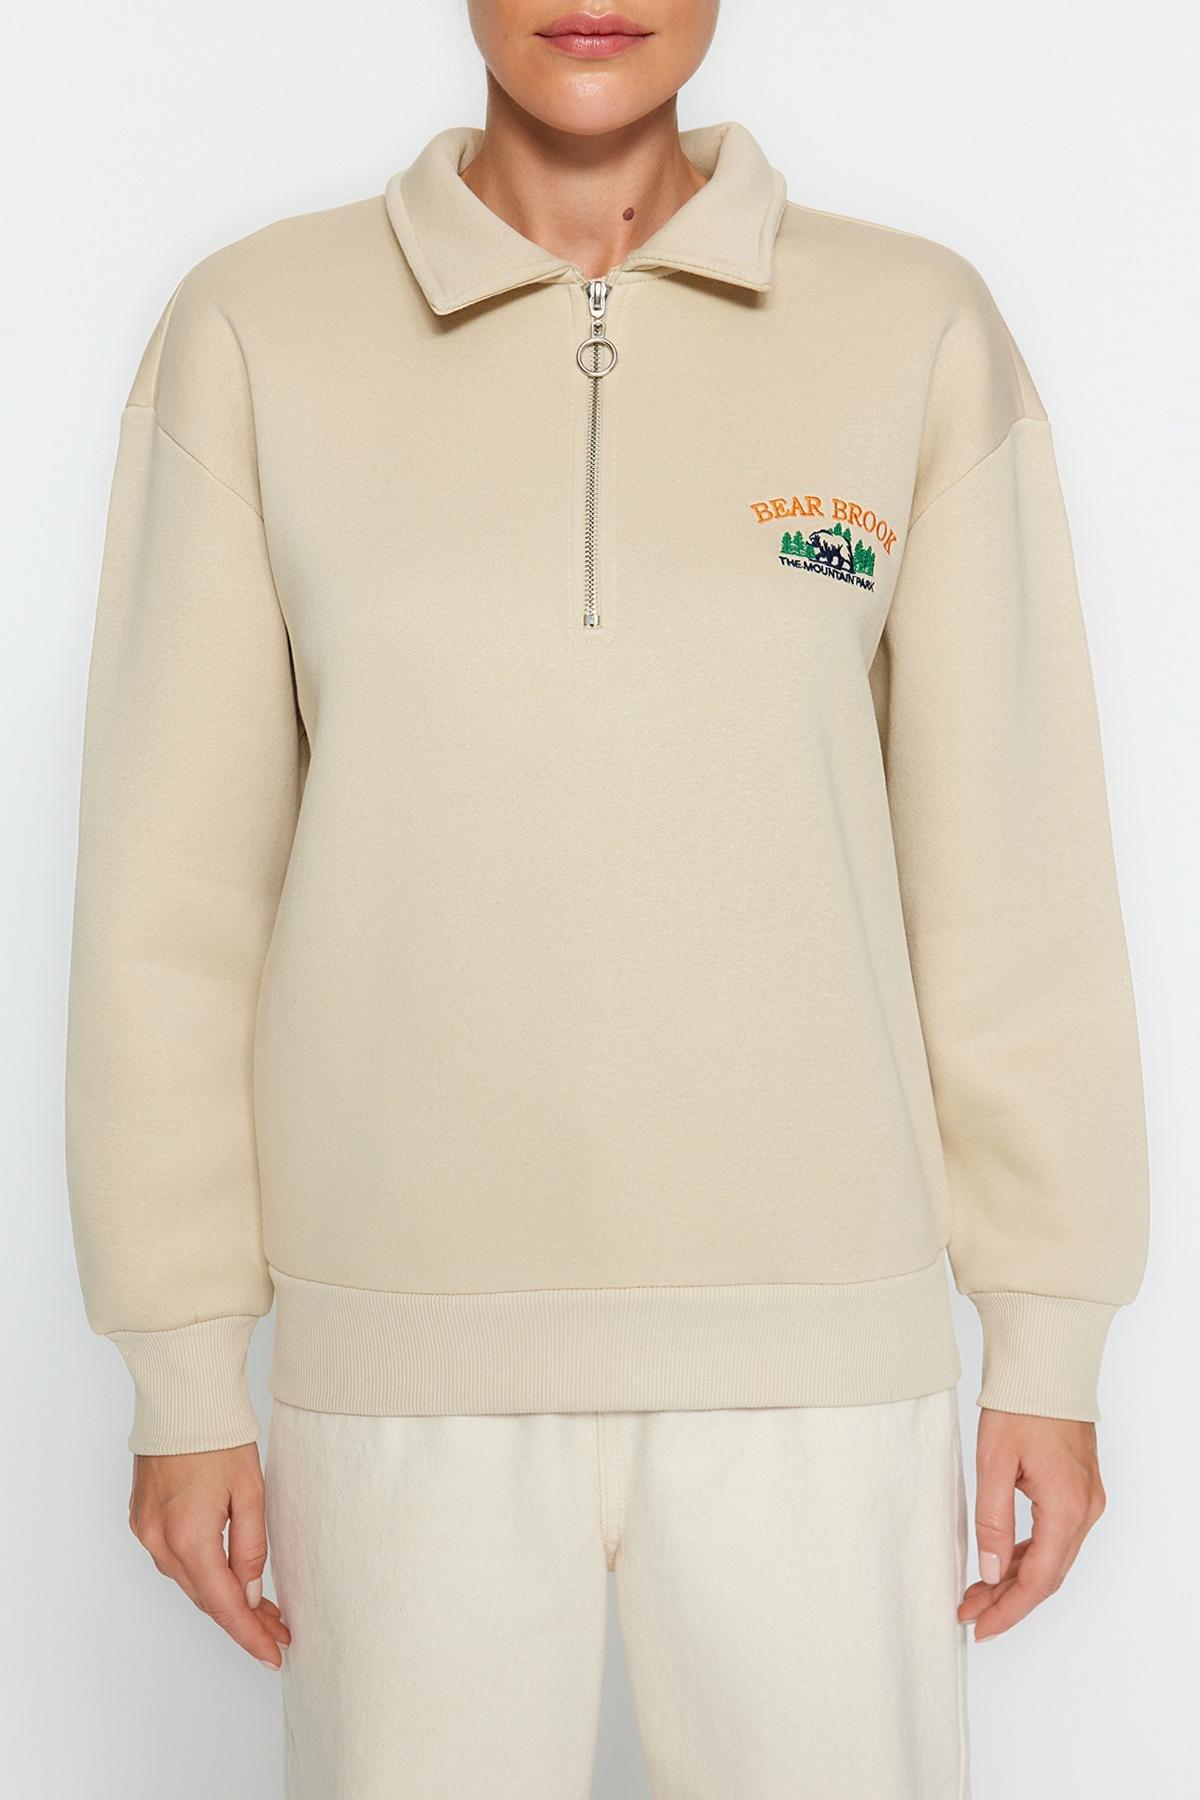 Trendyol - Beige Zipper Embroidered Knitted Sweatshirt